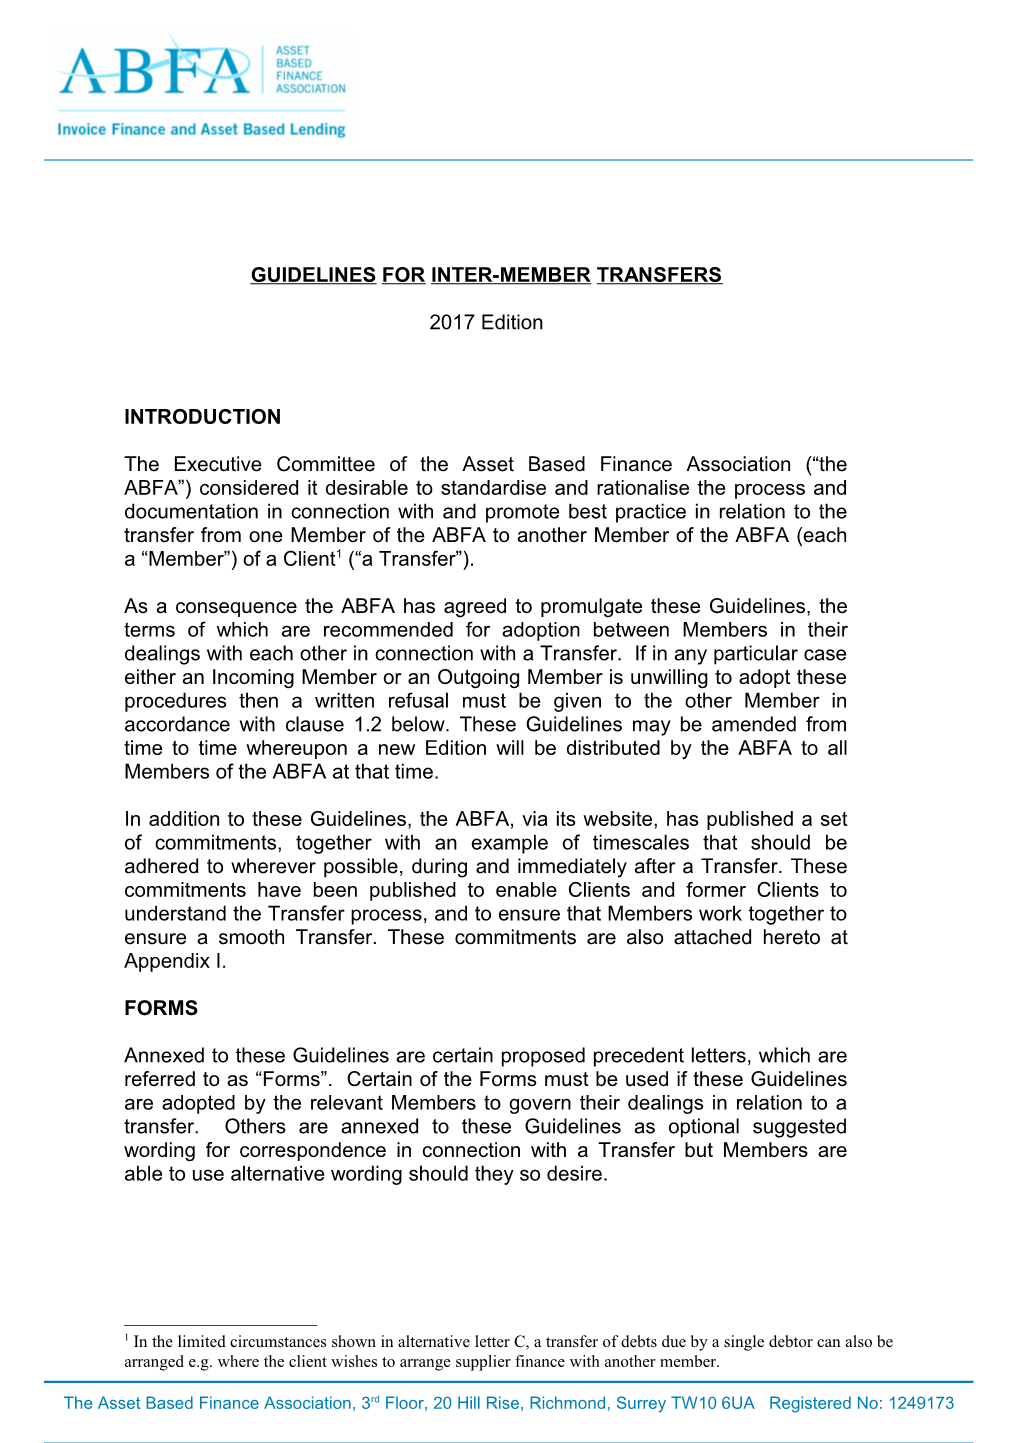 Inter Member Transfer Guidelines - Aug 2012